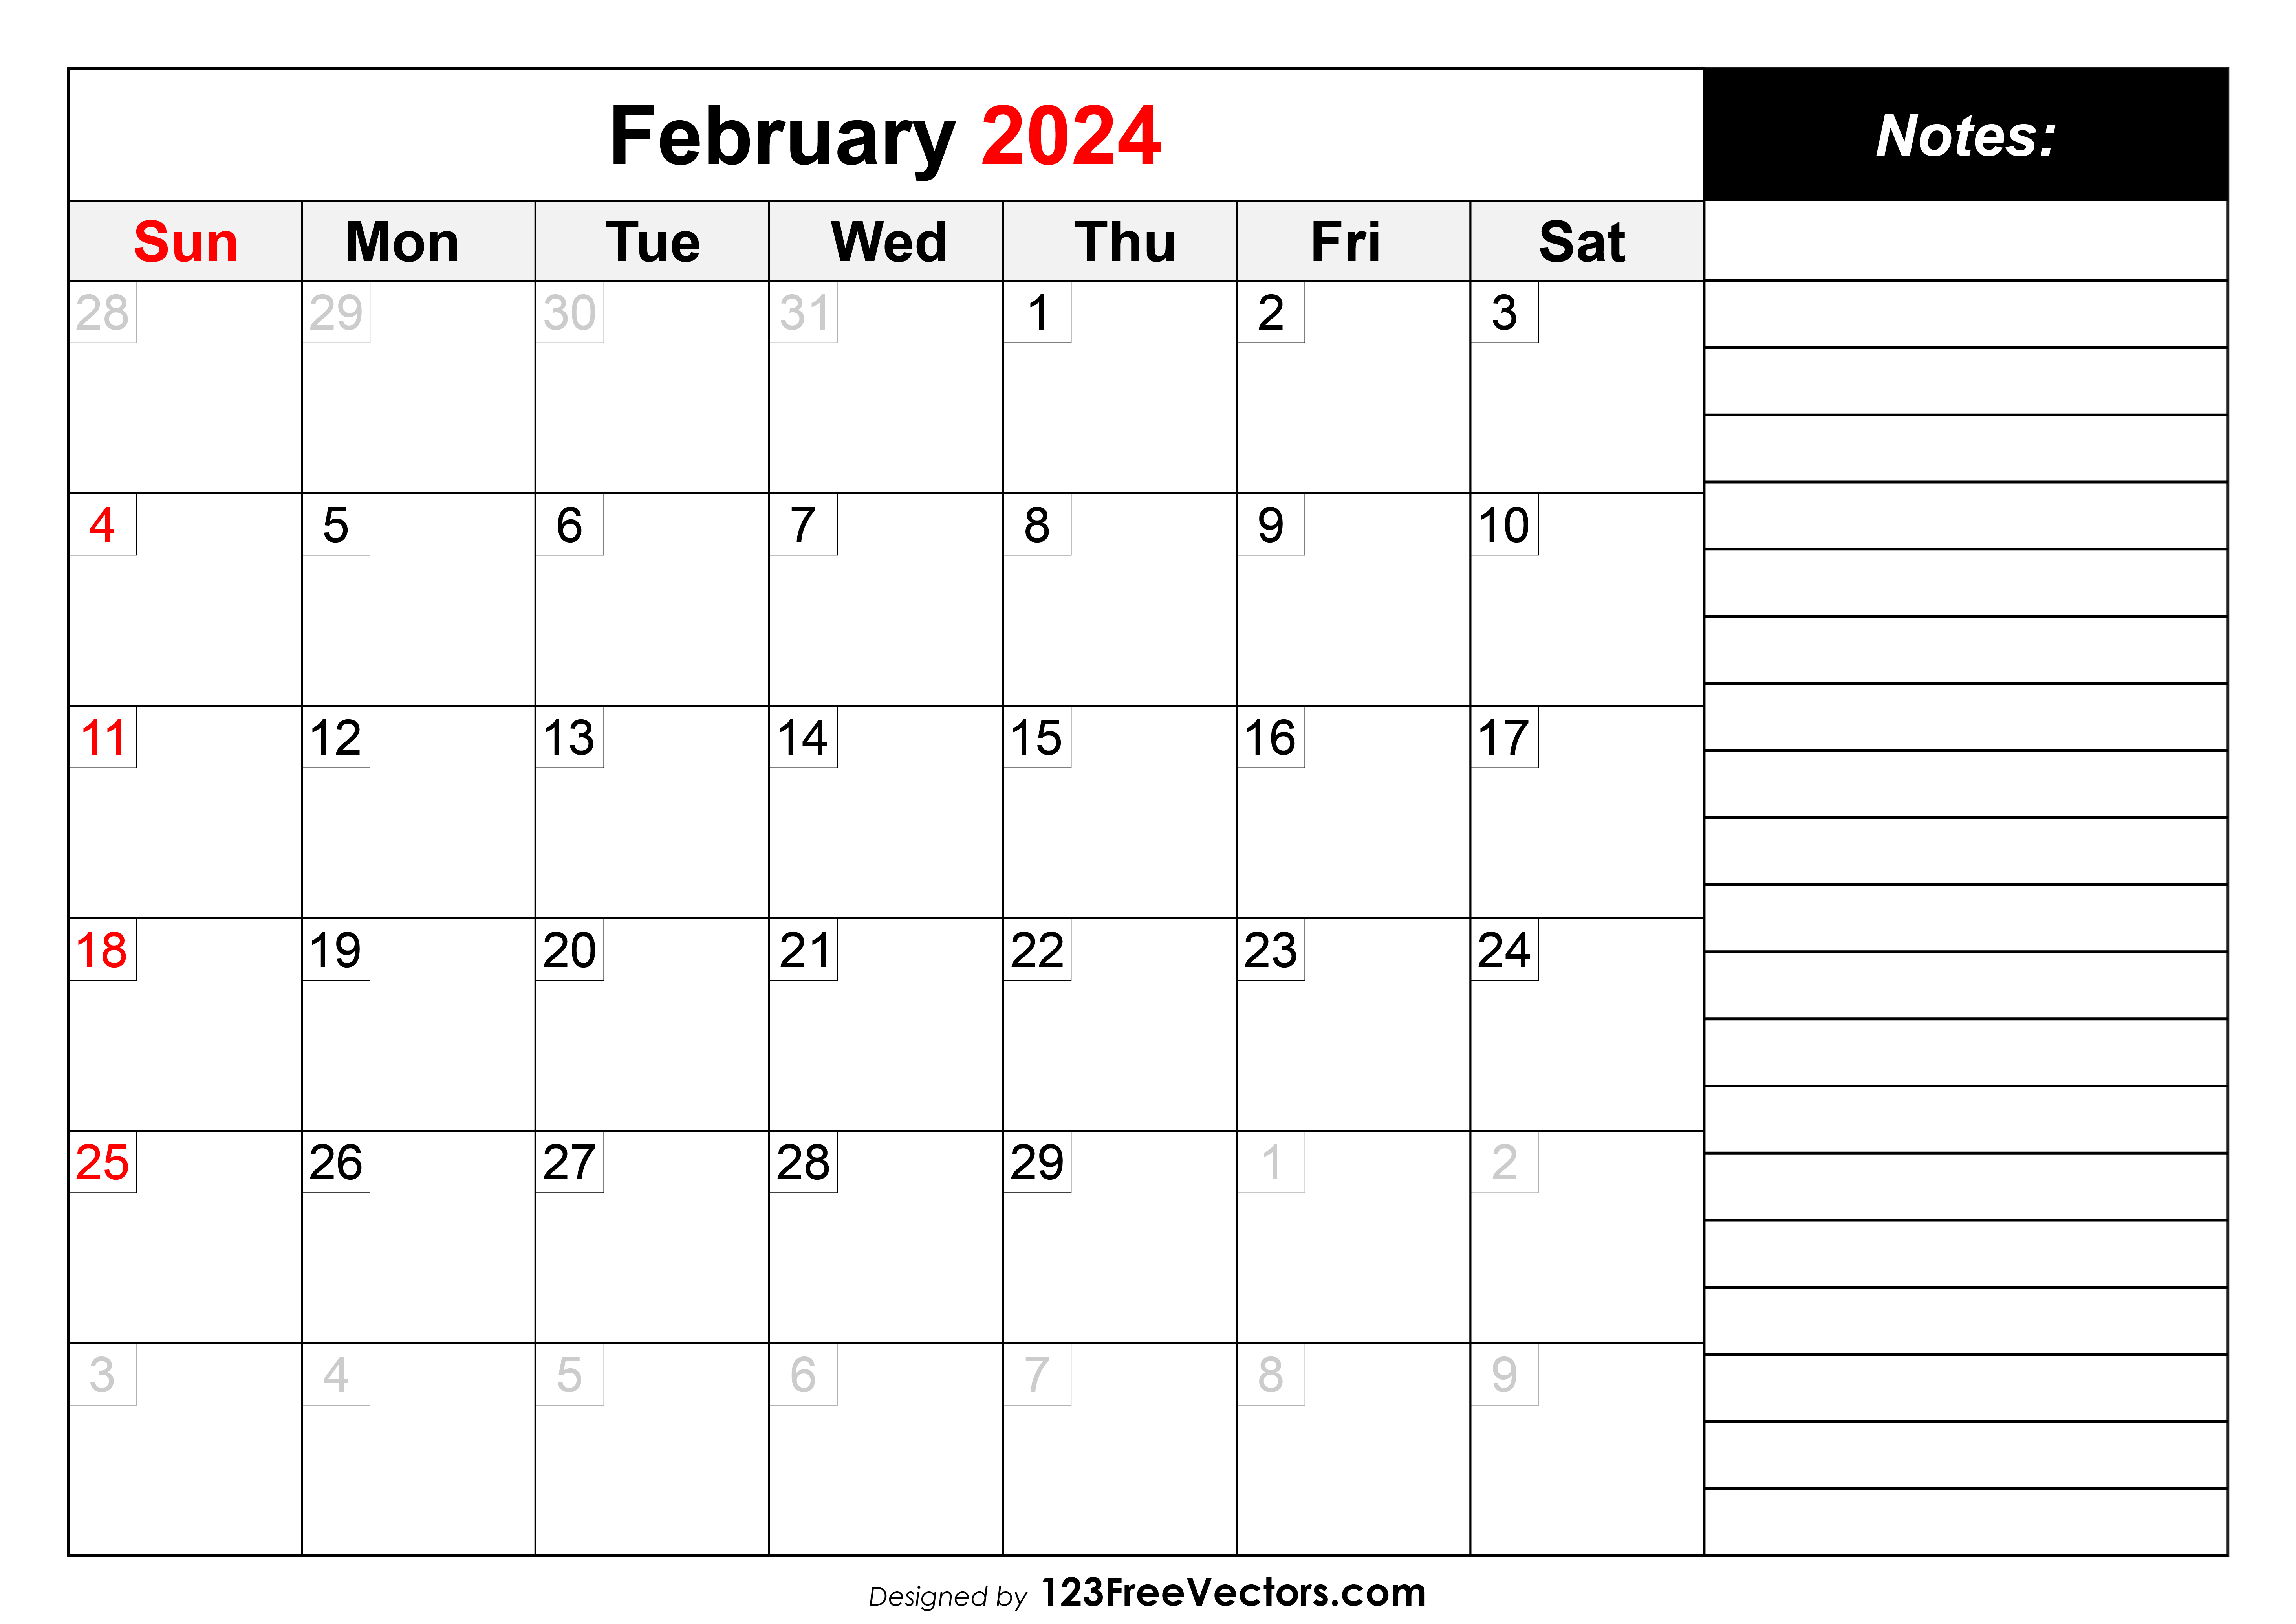 February 2024 Calendar Faina Anallise